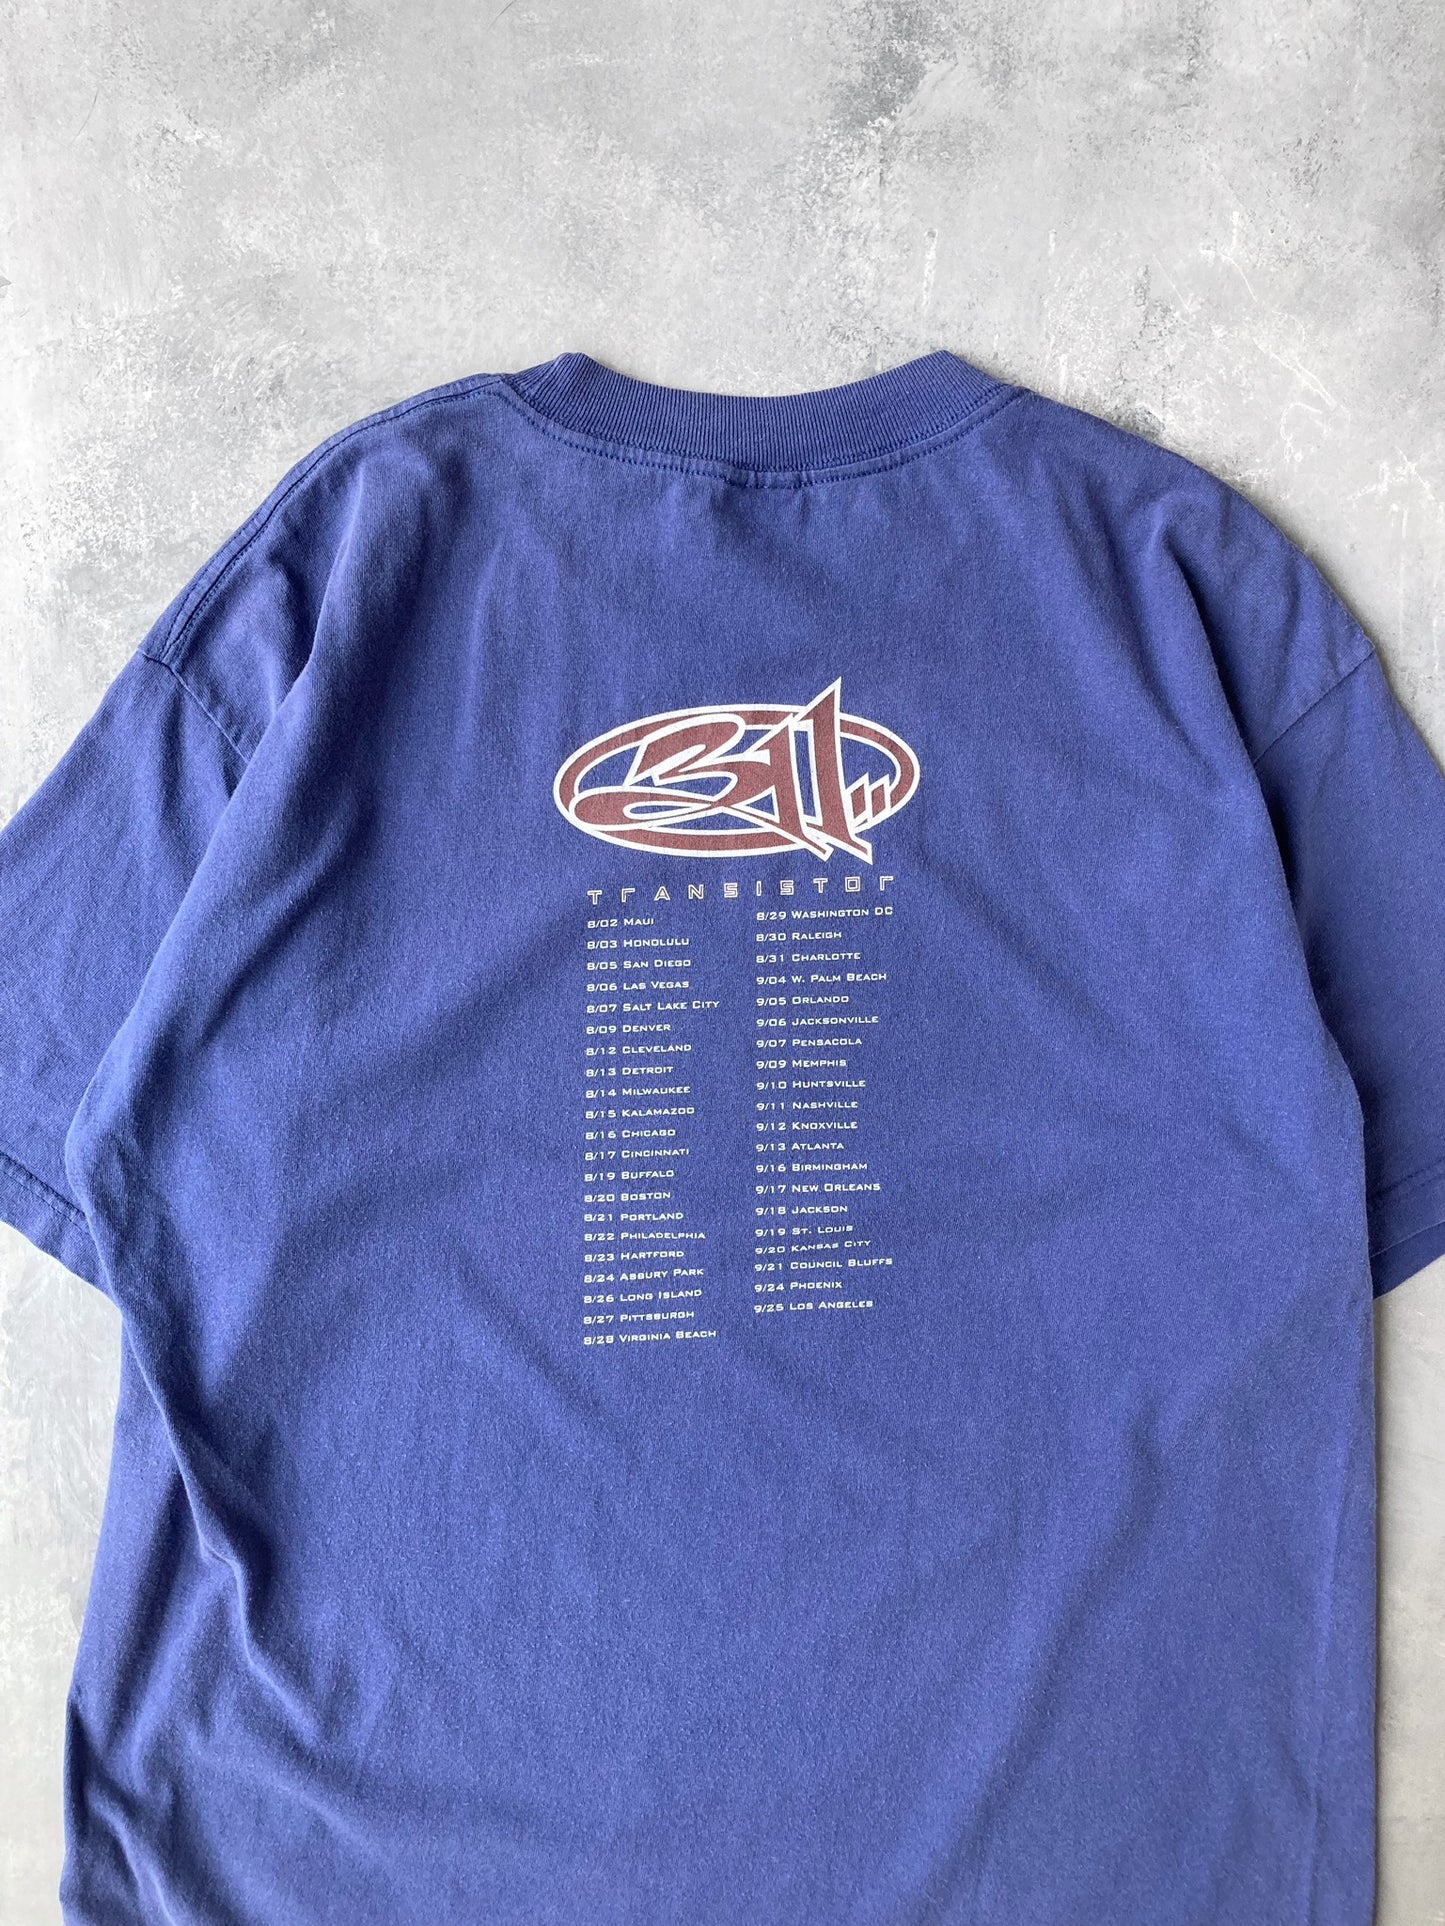 Transistor Tour 311 T-Shirt 90's  - XL